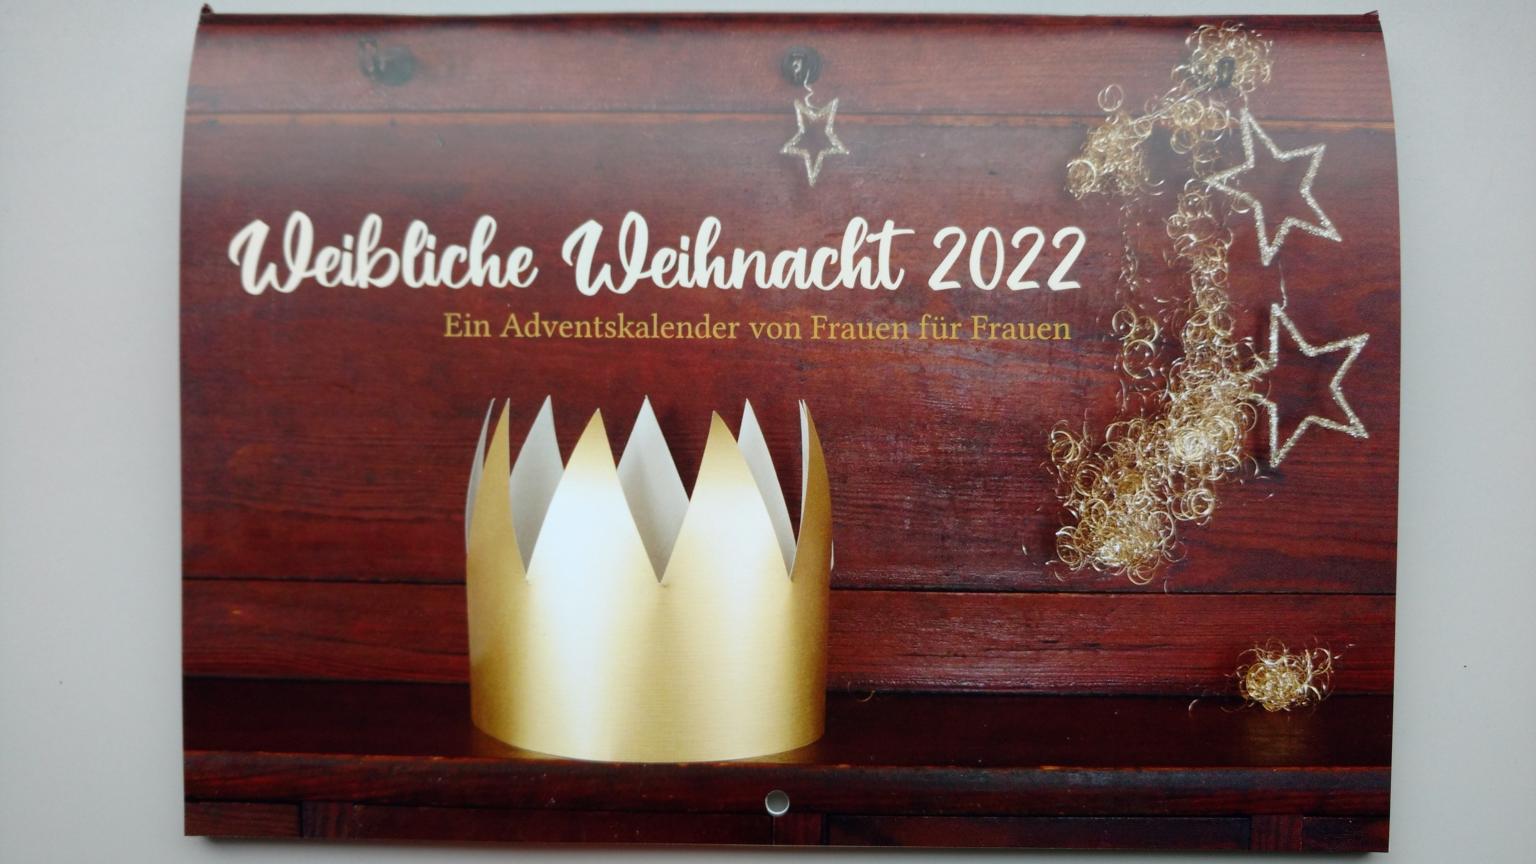 Titel Adventskalender 2022 (c) kfd Diözesanverband Mainz e.V.